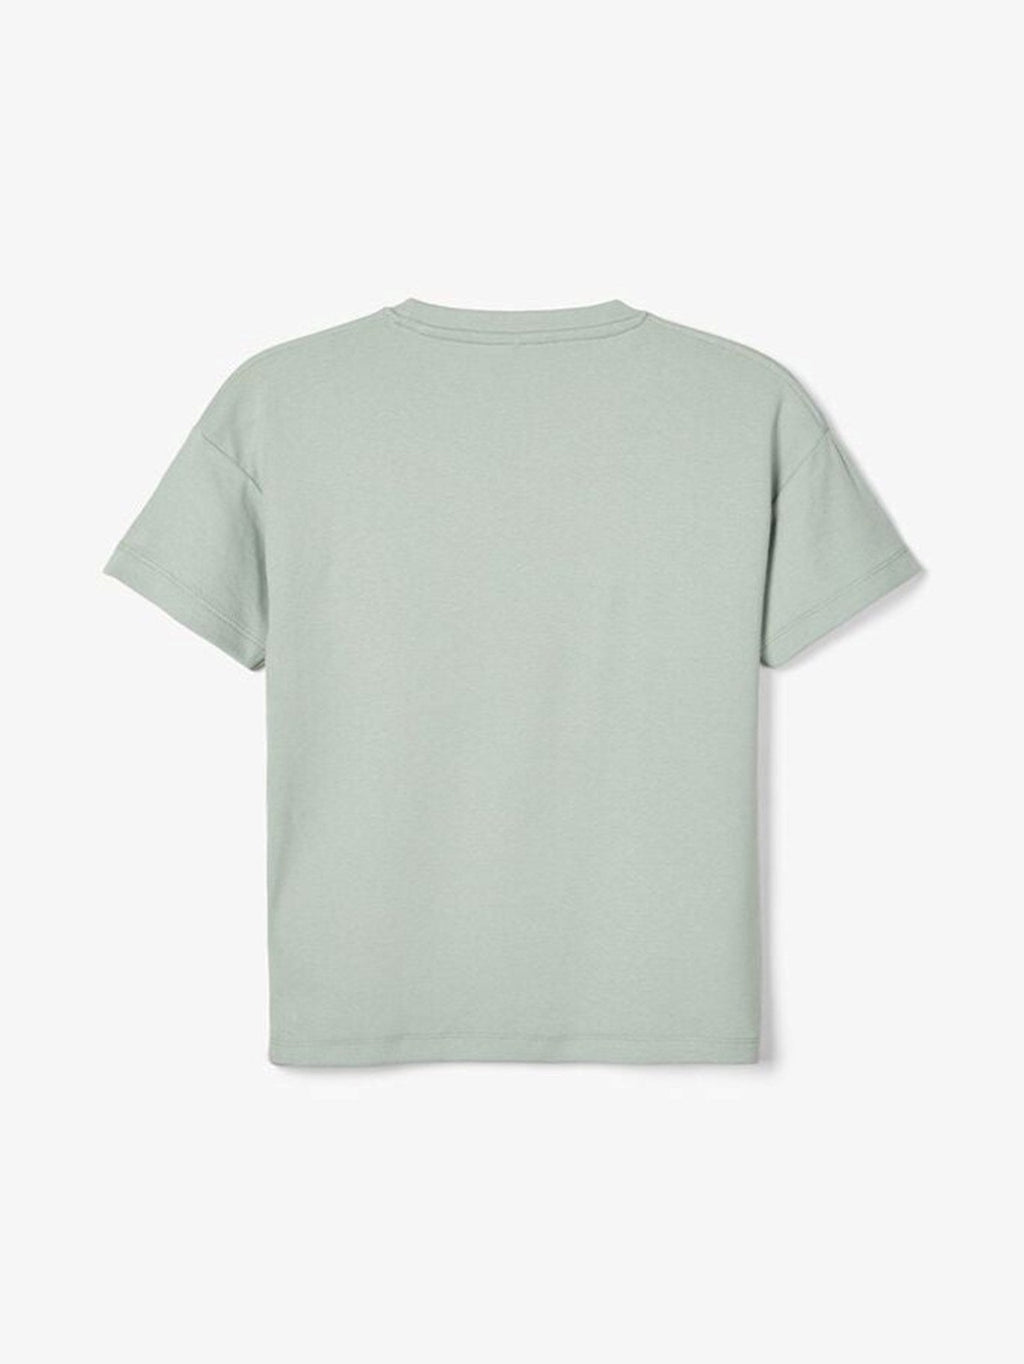 Lose Fit T -Shirt - hellgrün